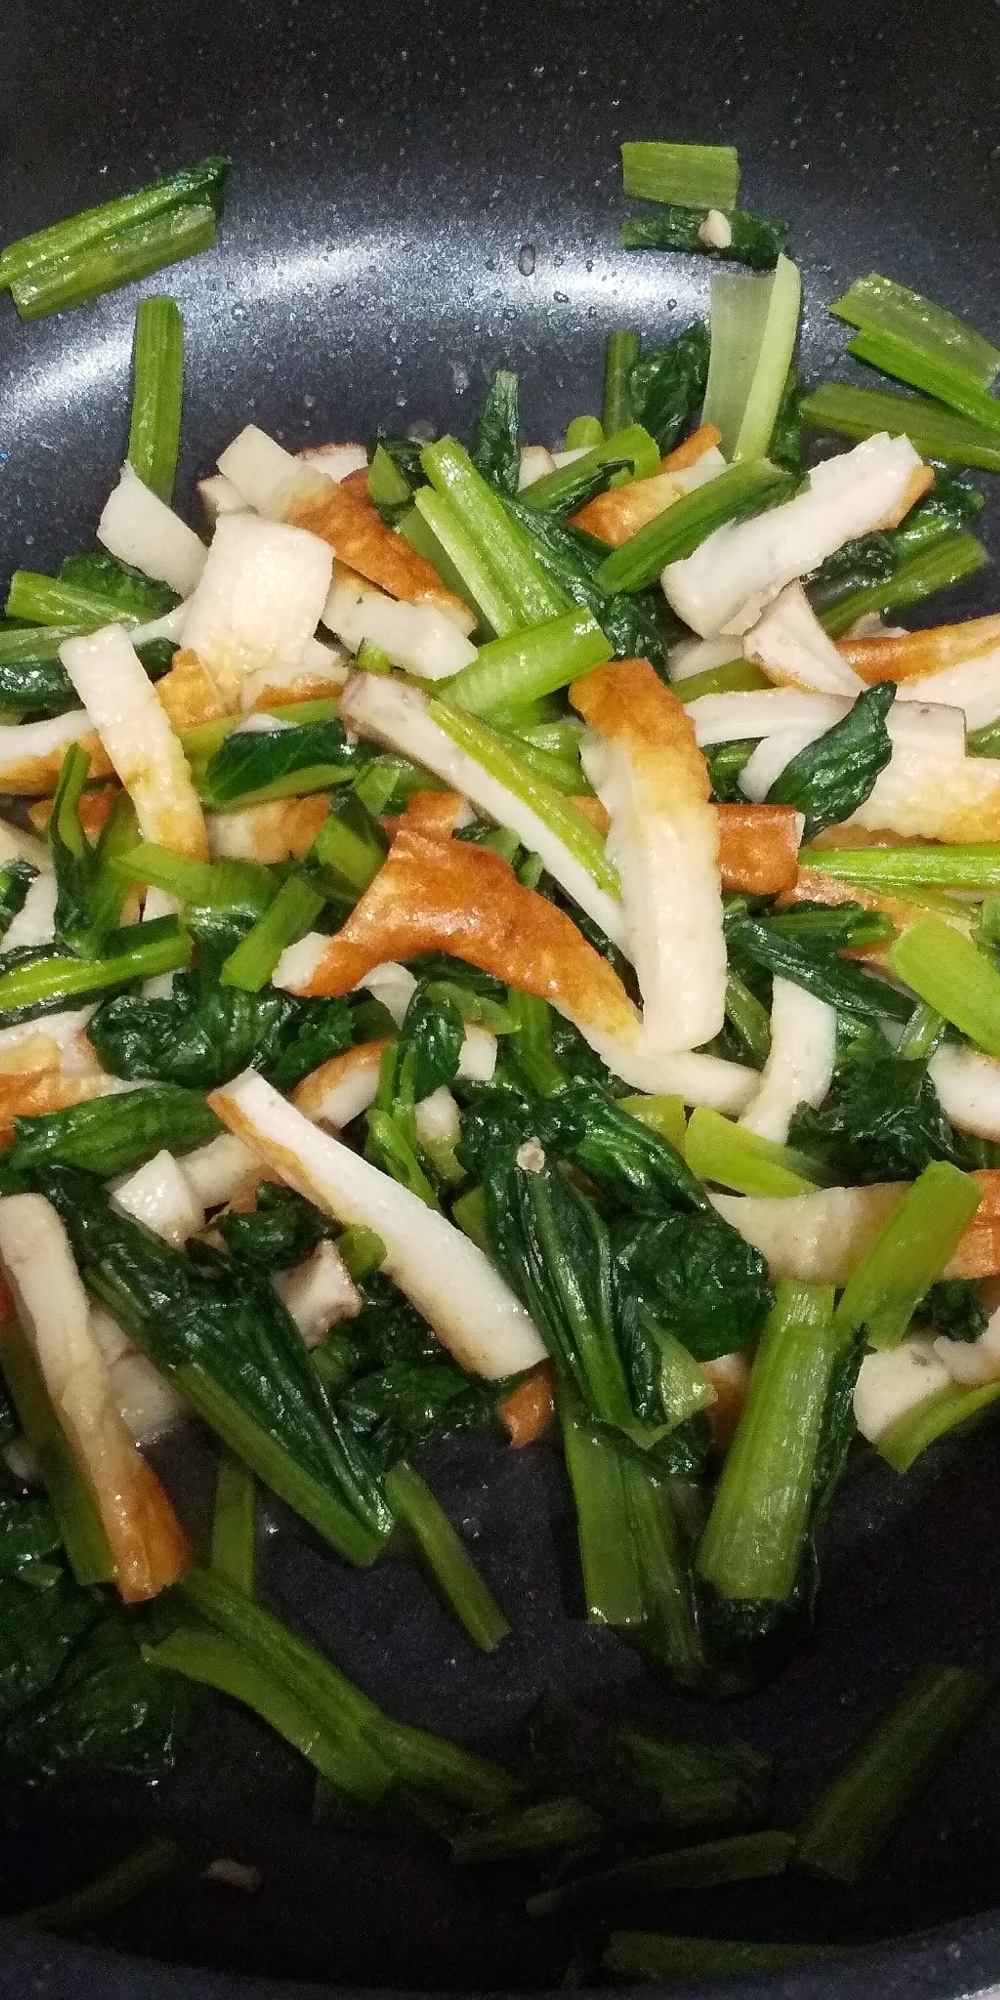 小松菜とちくわの炒め物